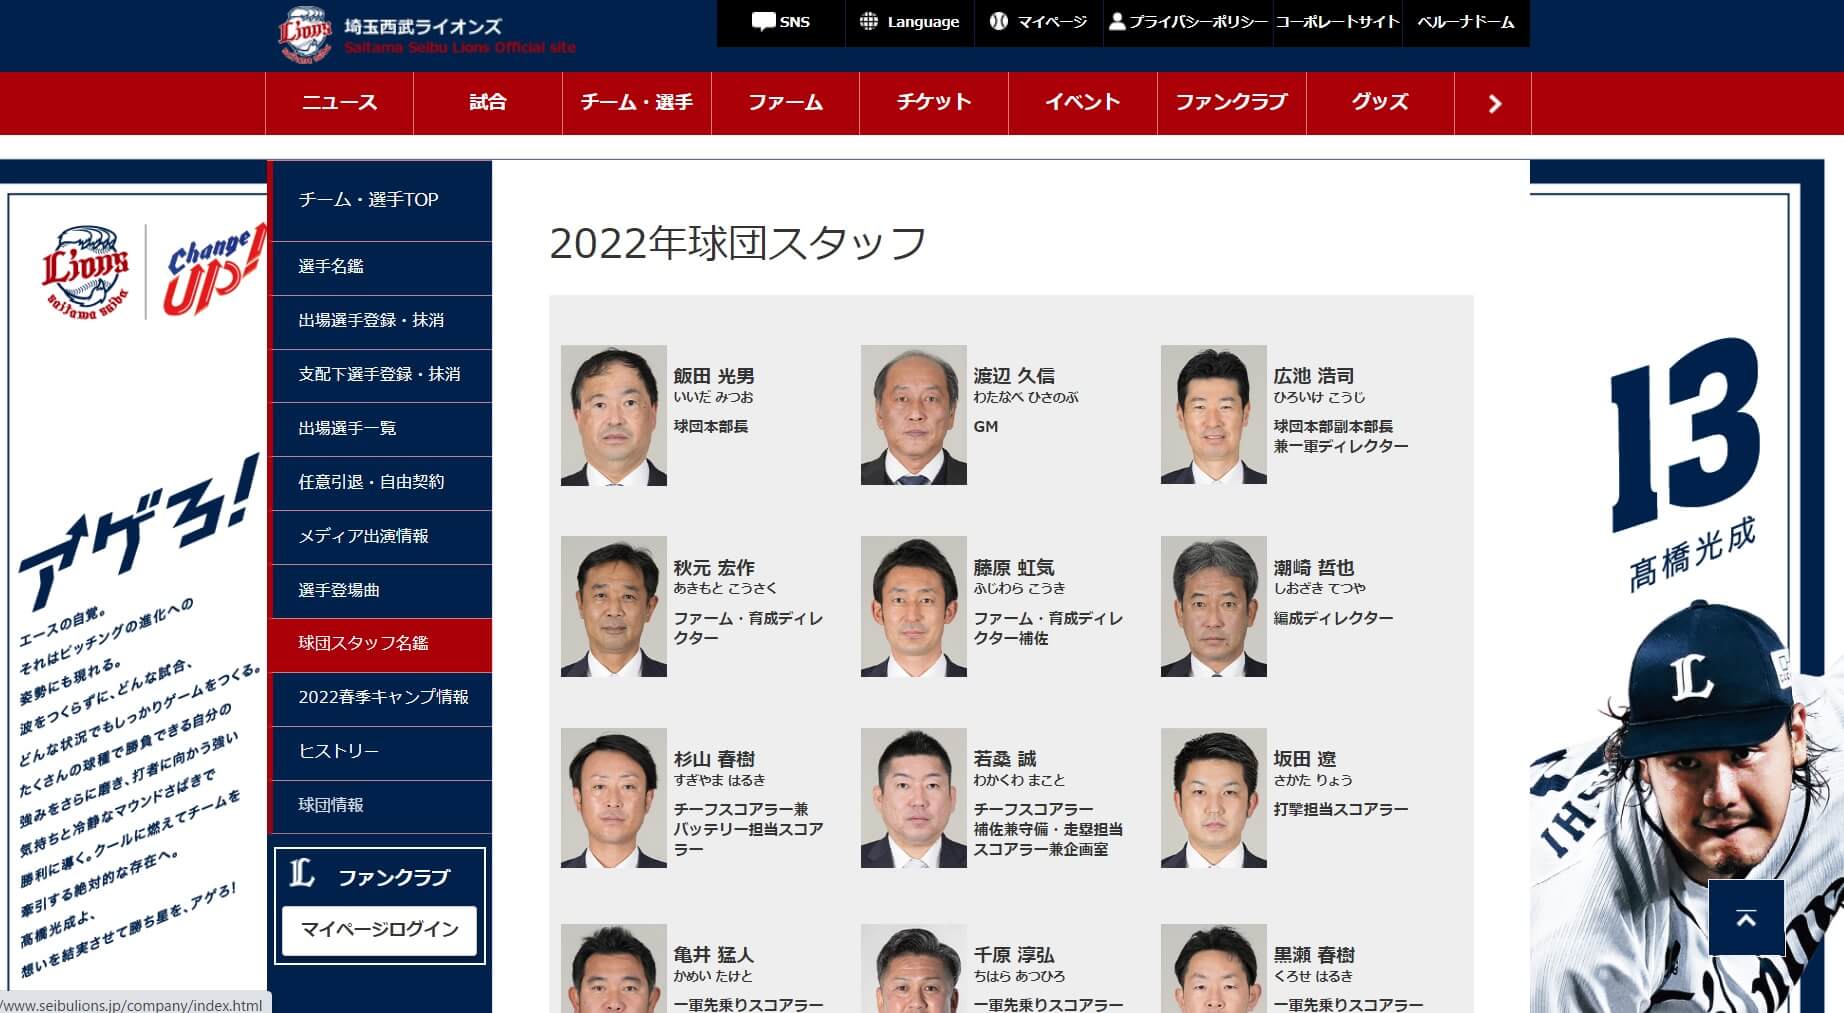 【西武】オフィシャルサイトに「球団スタッフ名鑑」を新設！昨年引退の榎田氏らスタッフのキャリアも